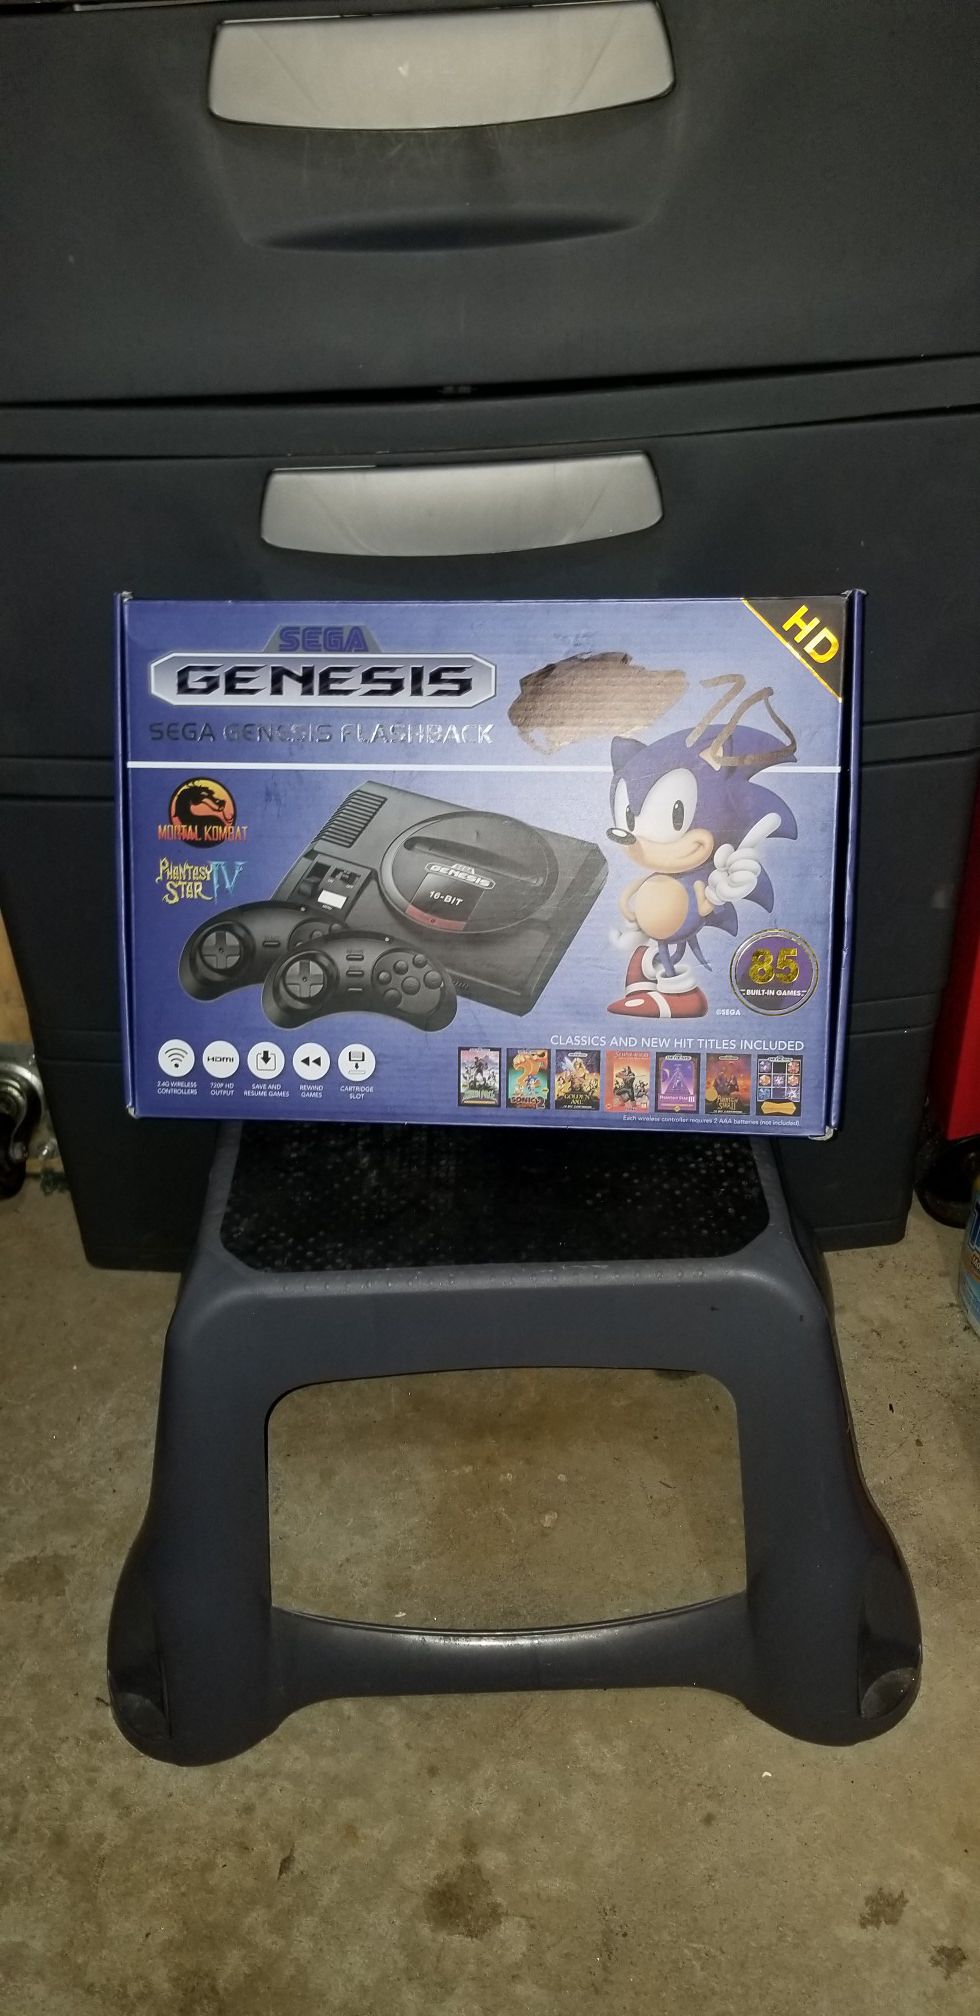 Sega Genesis flashback 85 built-in classic games